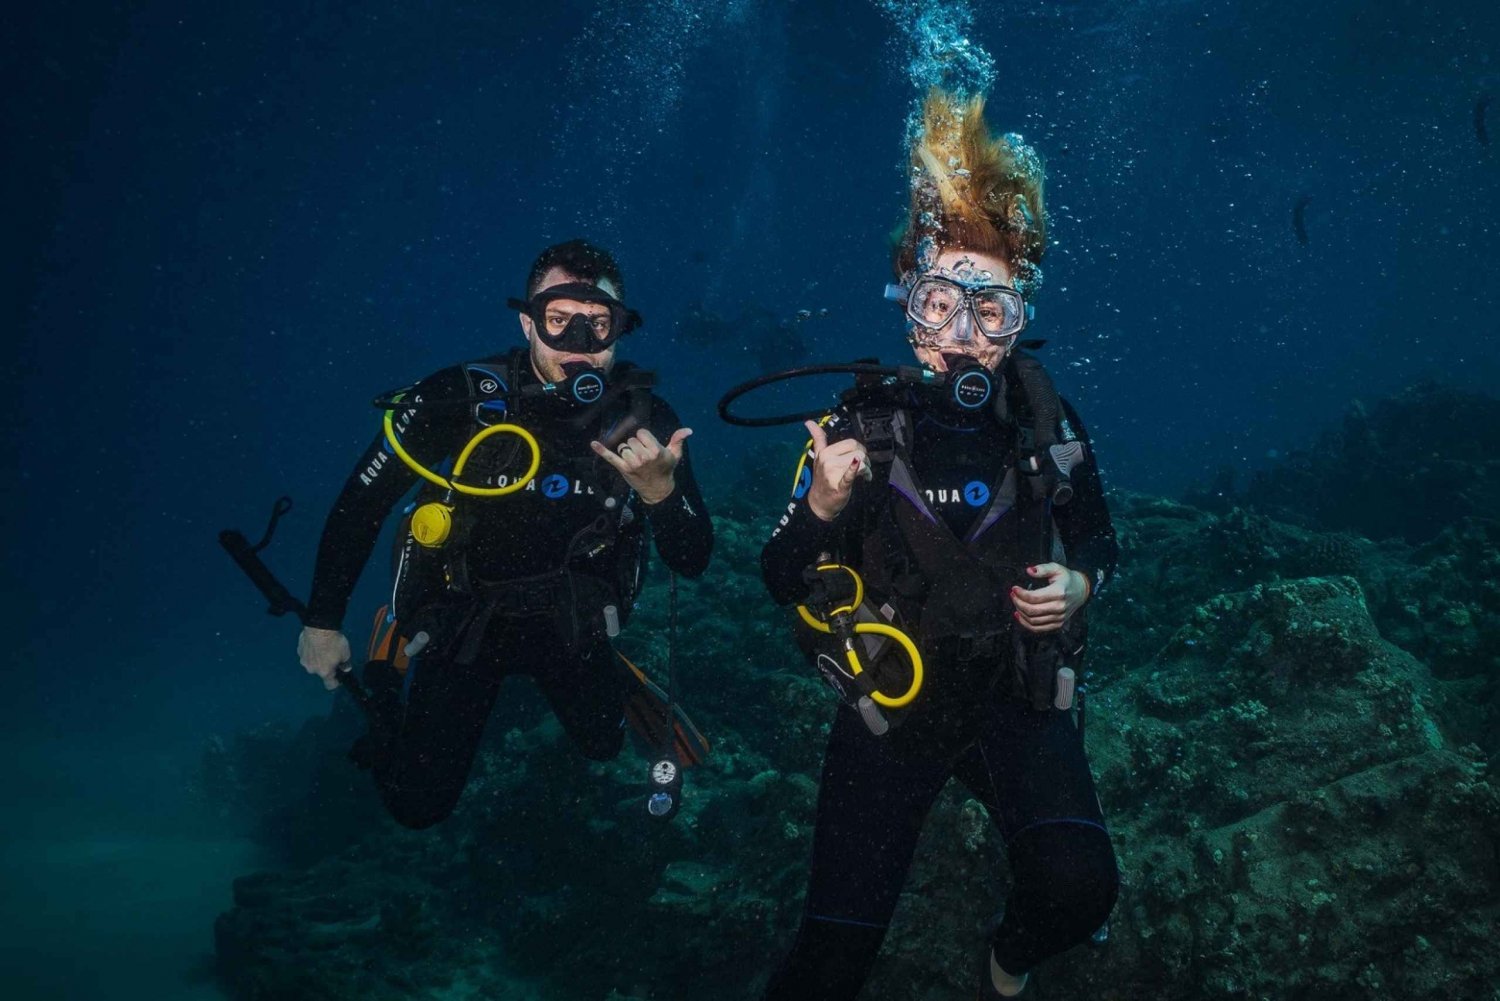 Lahaina: Descubra a classe de mergulho